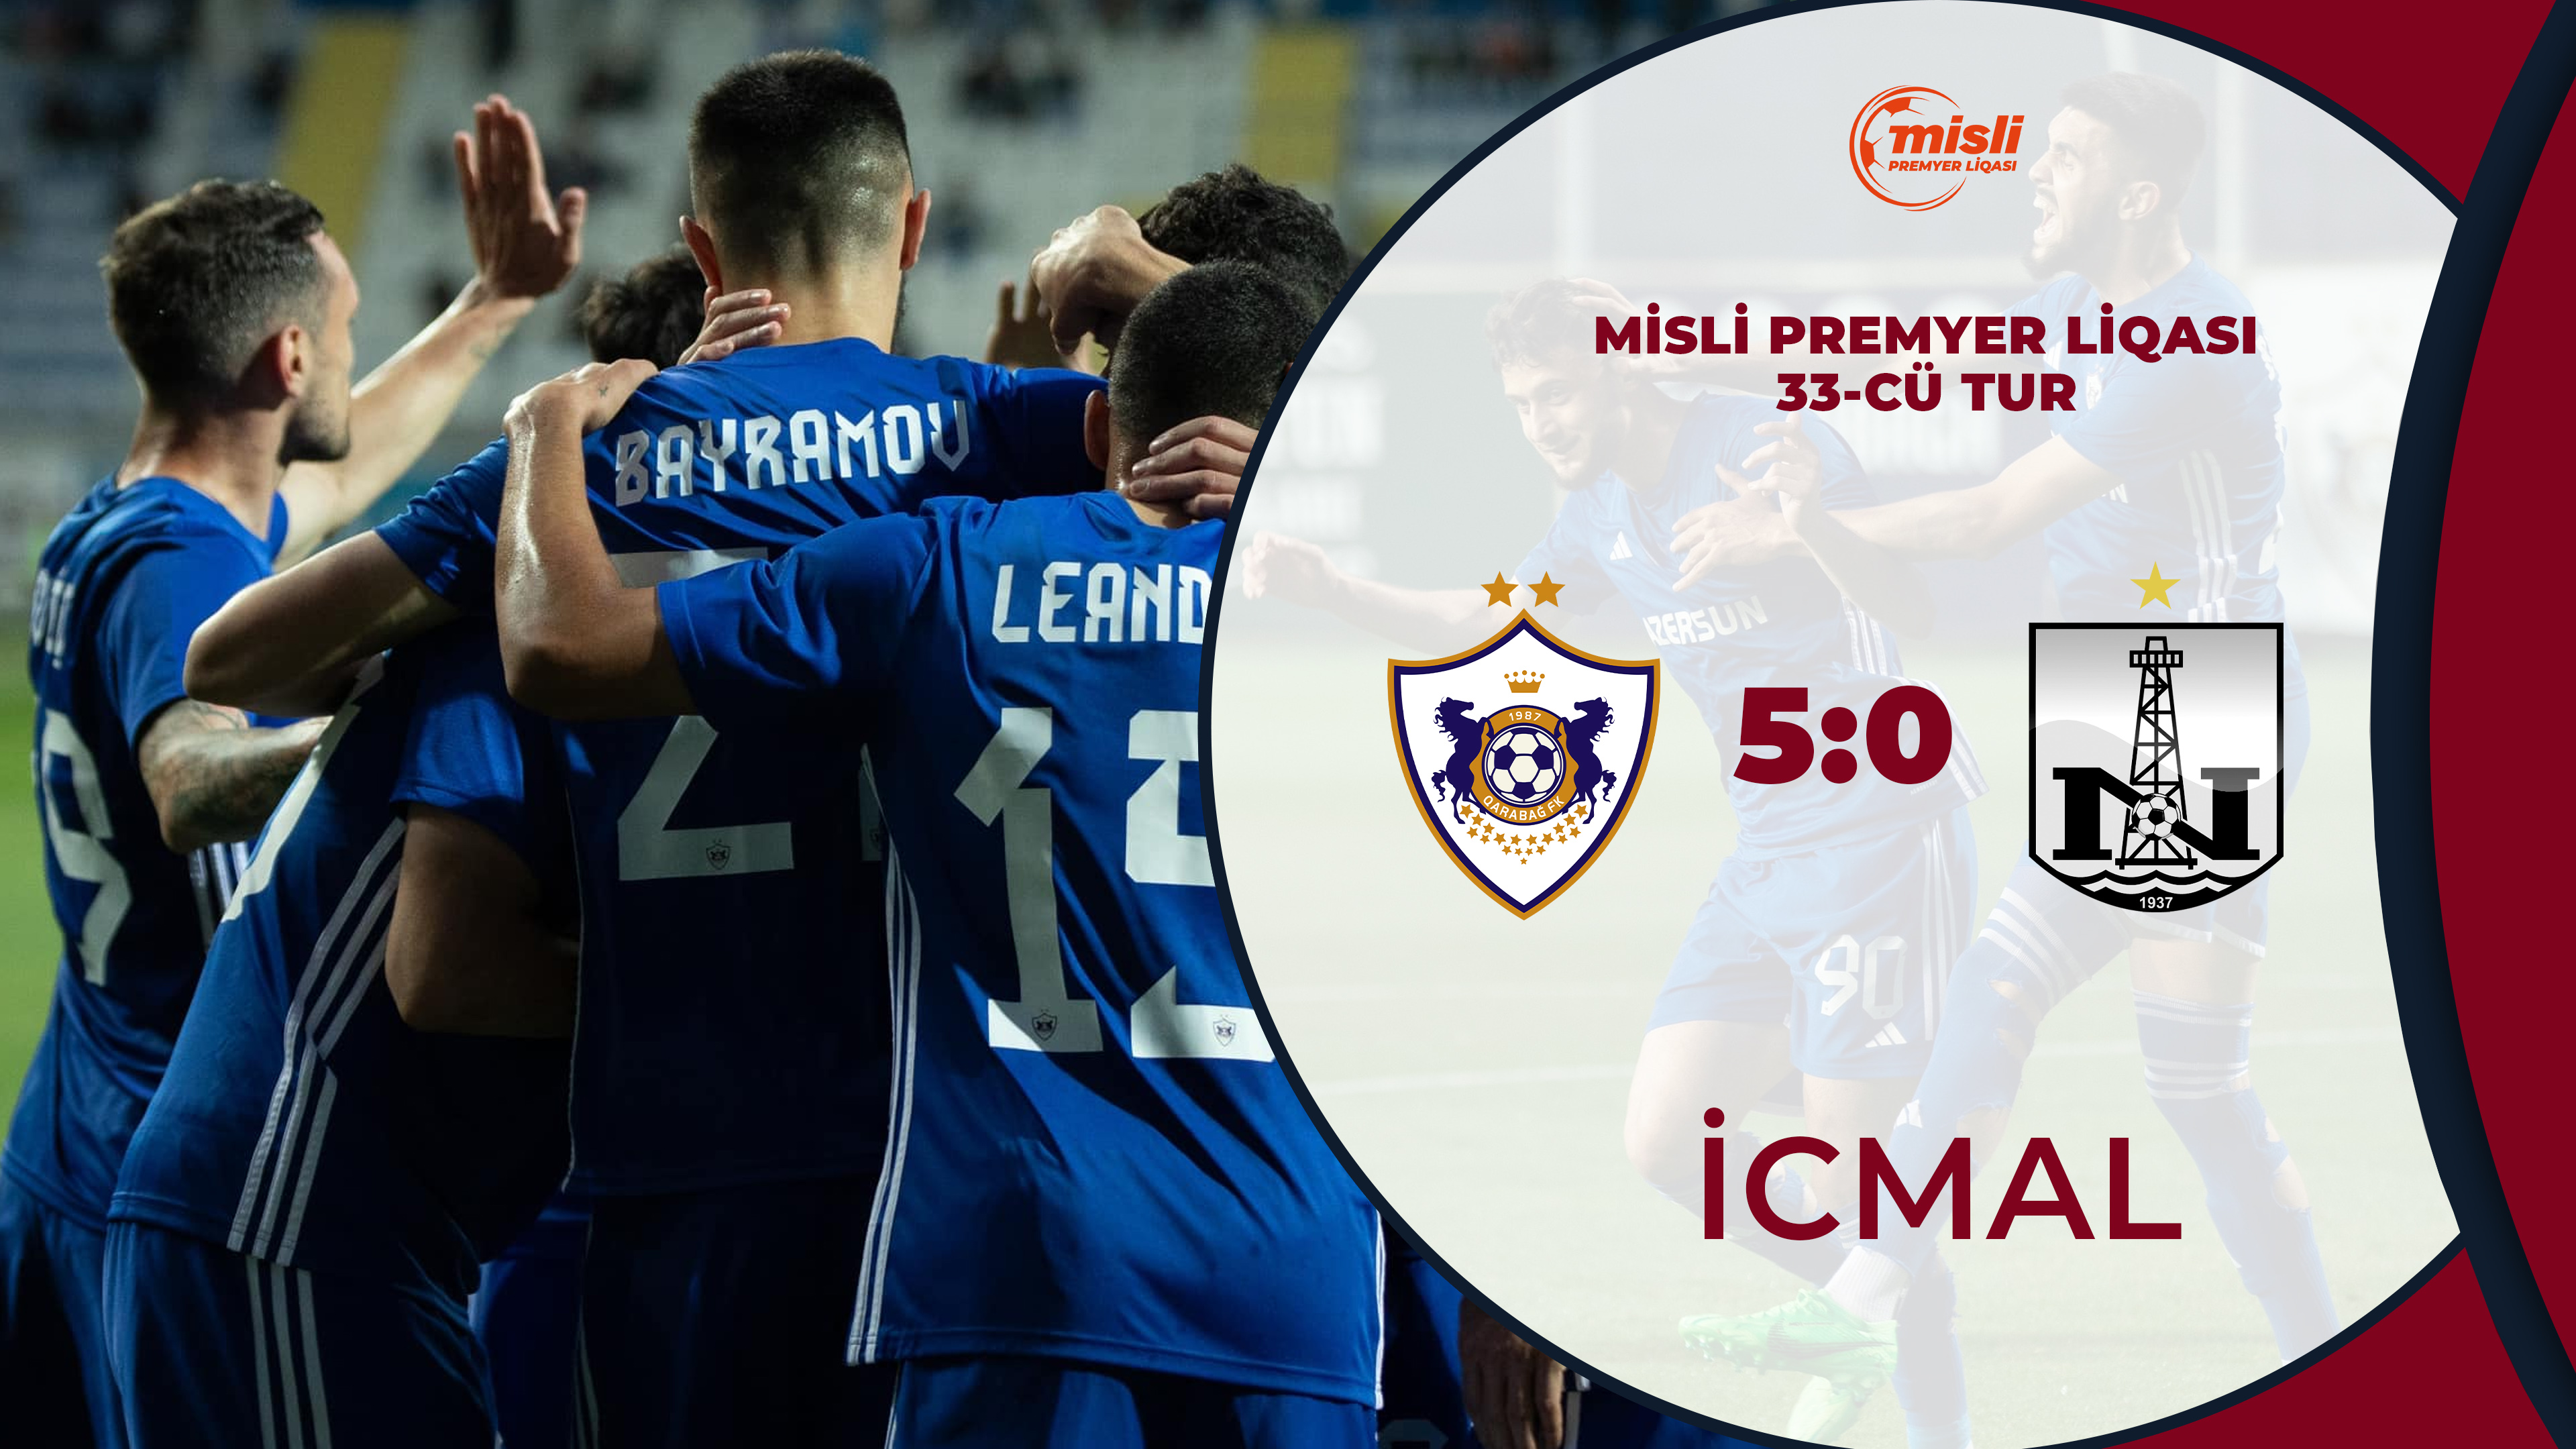 Qarabağ 5:0 Neftçi | Misli Premyer Liqası, 33-cü tur | İCMAL